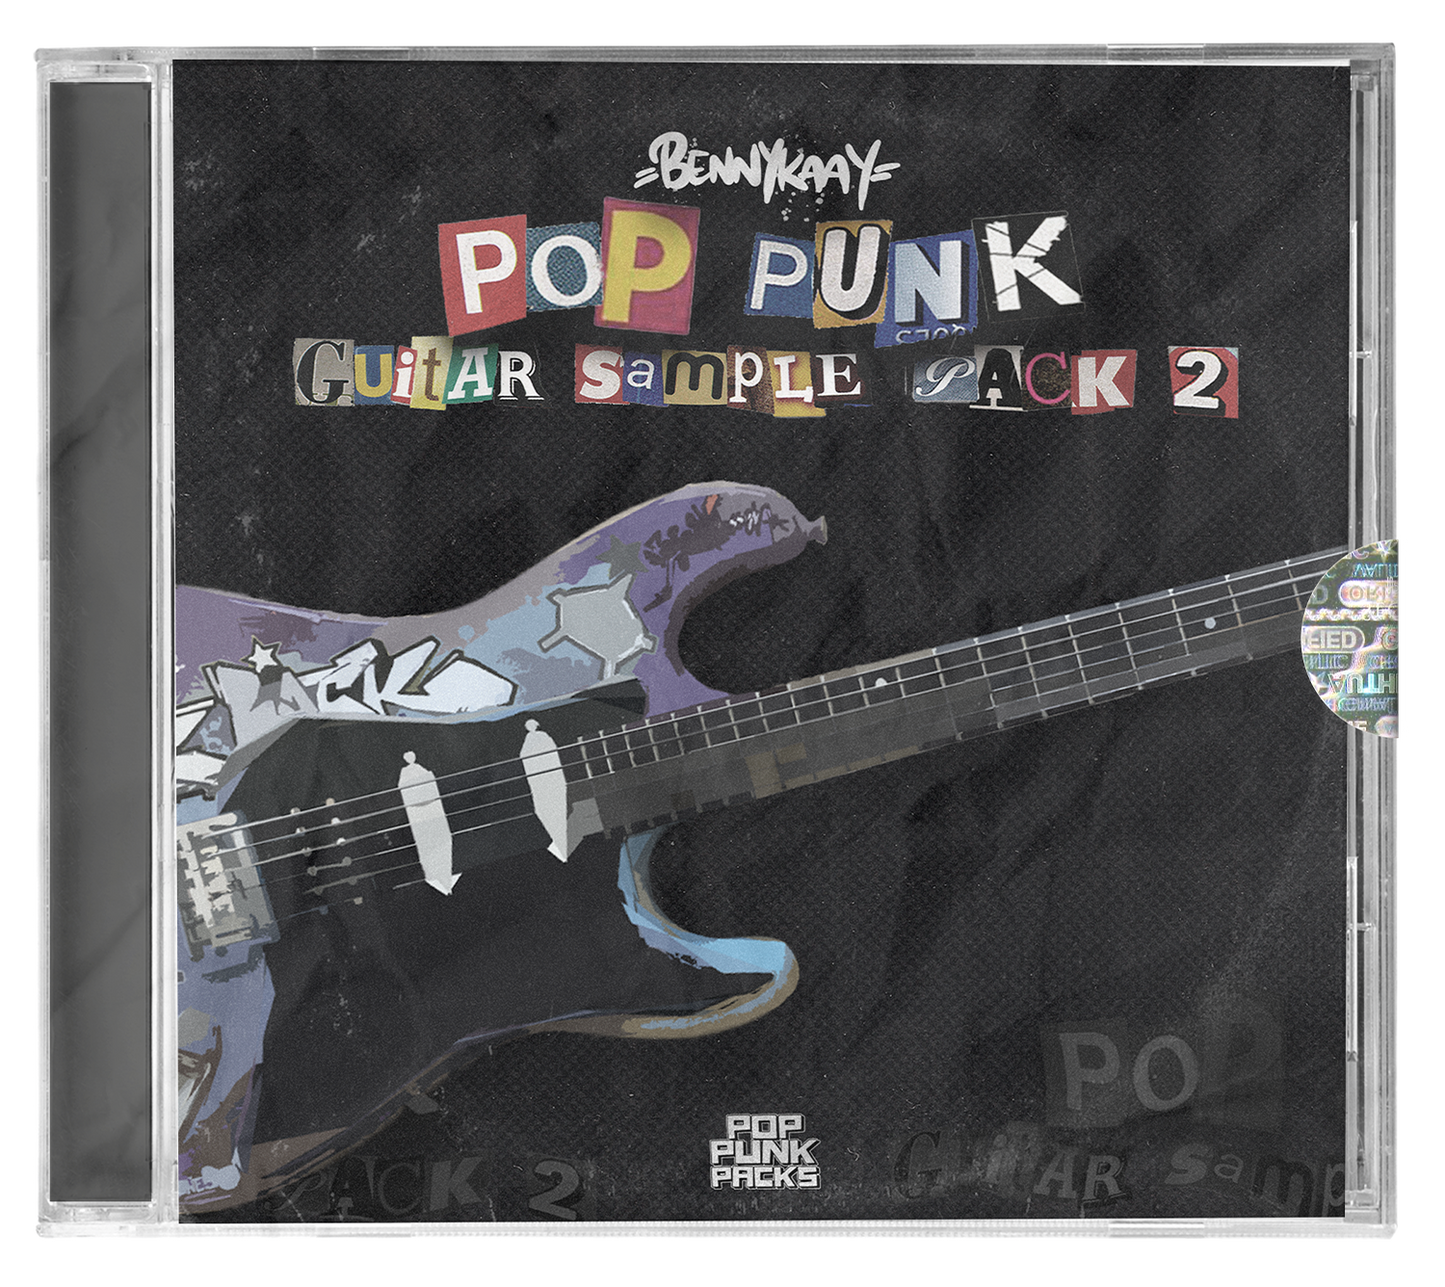 POP PUNK GUITAR SAMPLE PACK 2